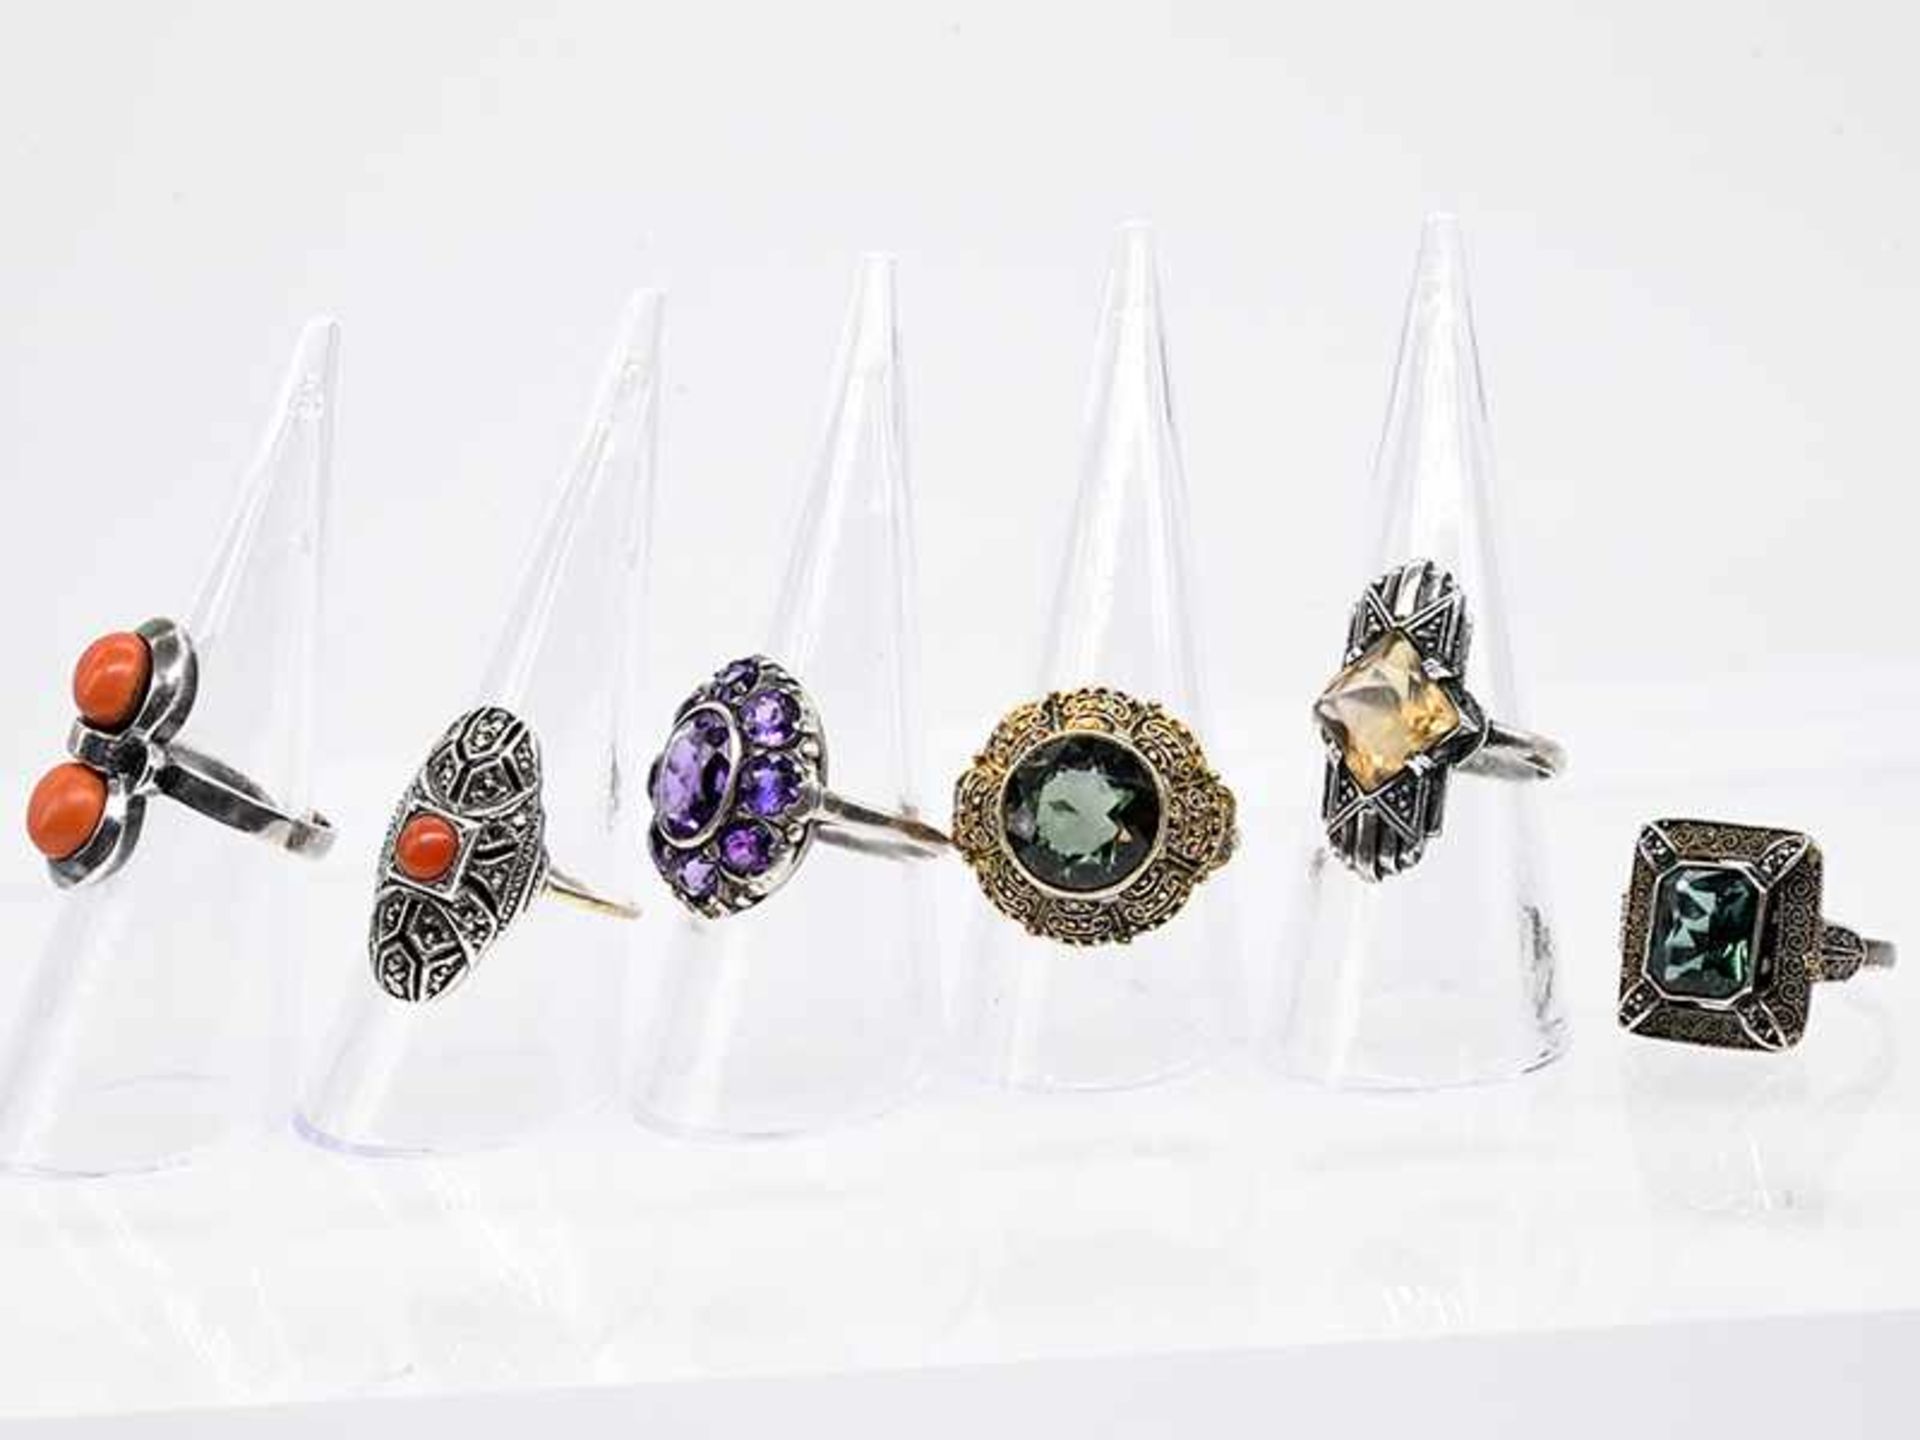 6 verschiedene Ringe u.a. von Theodor Fahrner mit diversem Steinbesatz, aus verschiedenen Epochen - Image 9 of 9